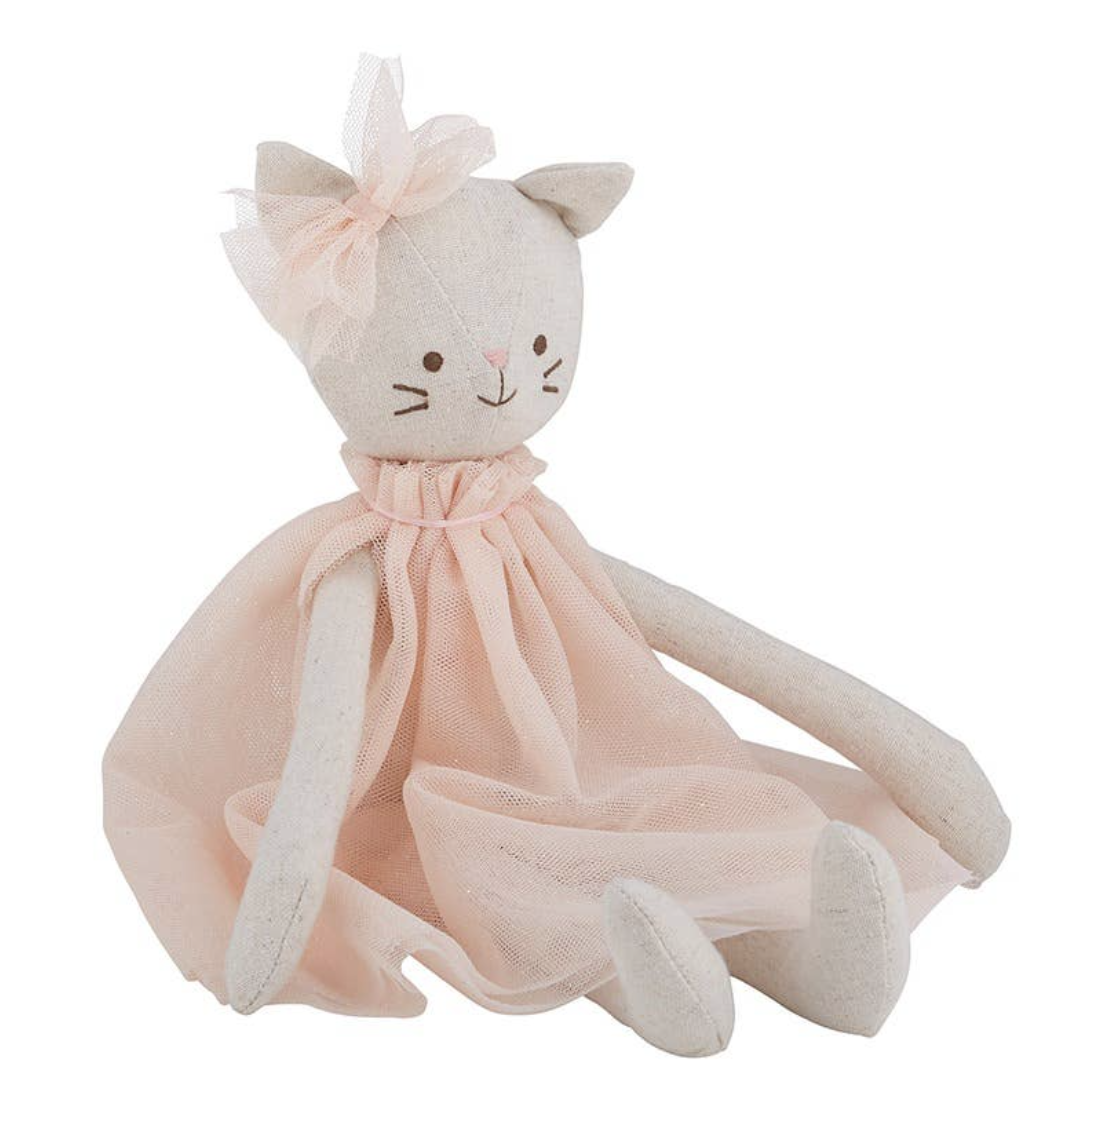 01. Soft Cuddle Doll